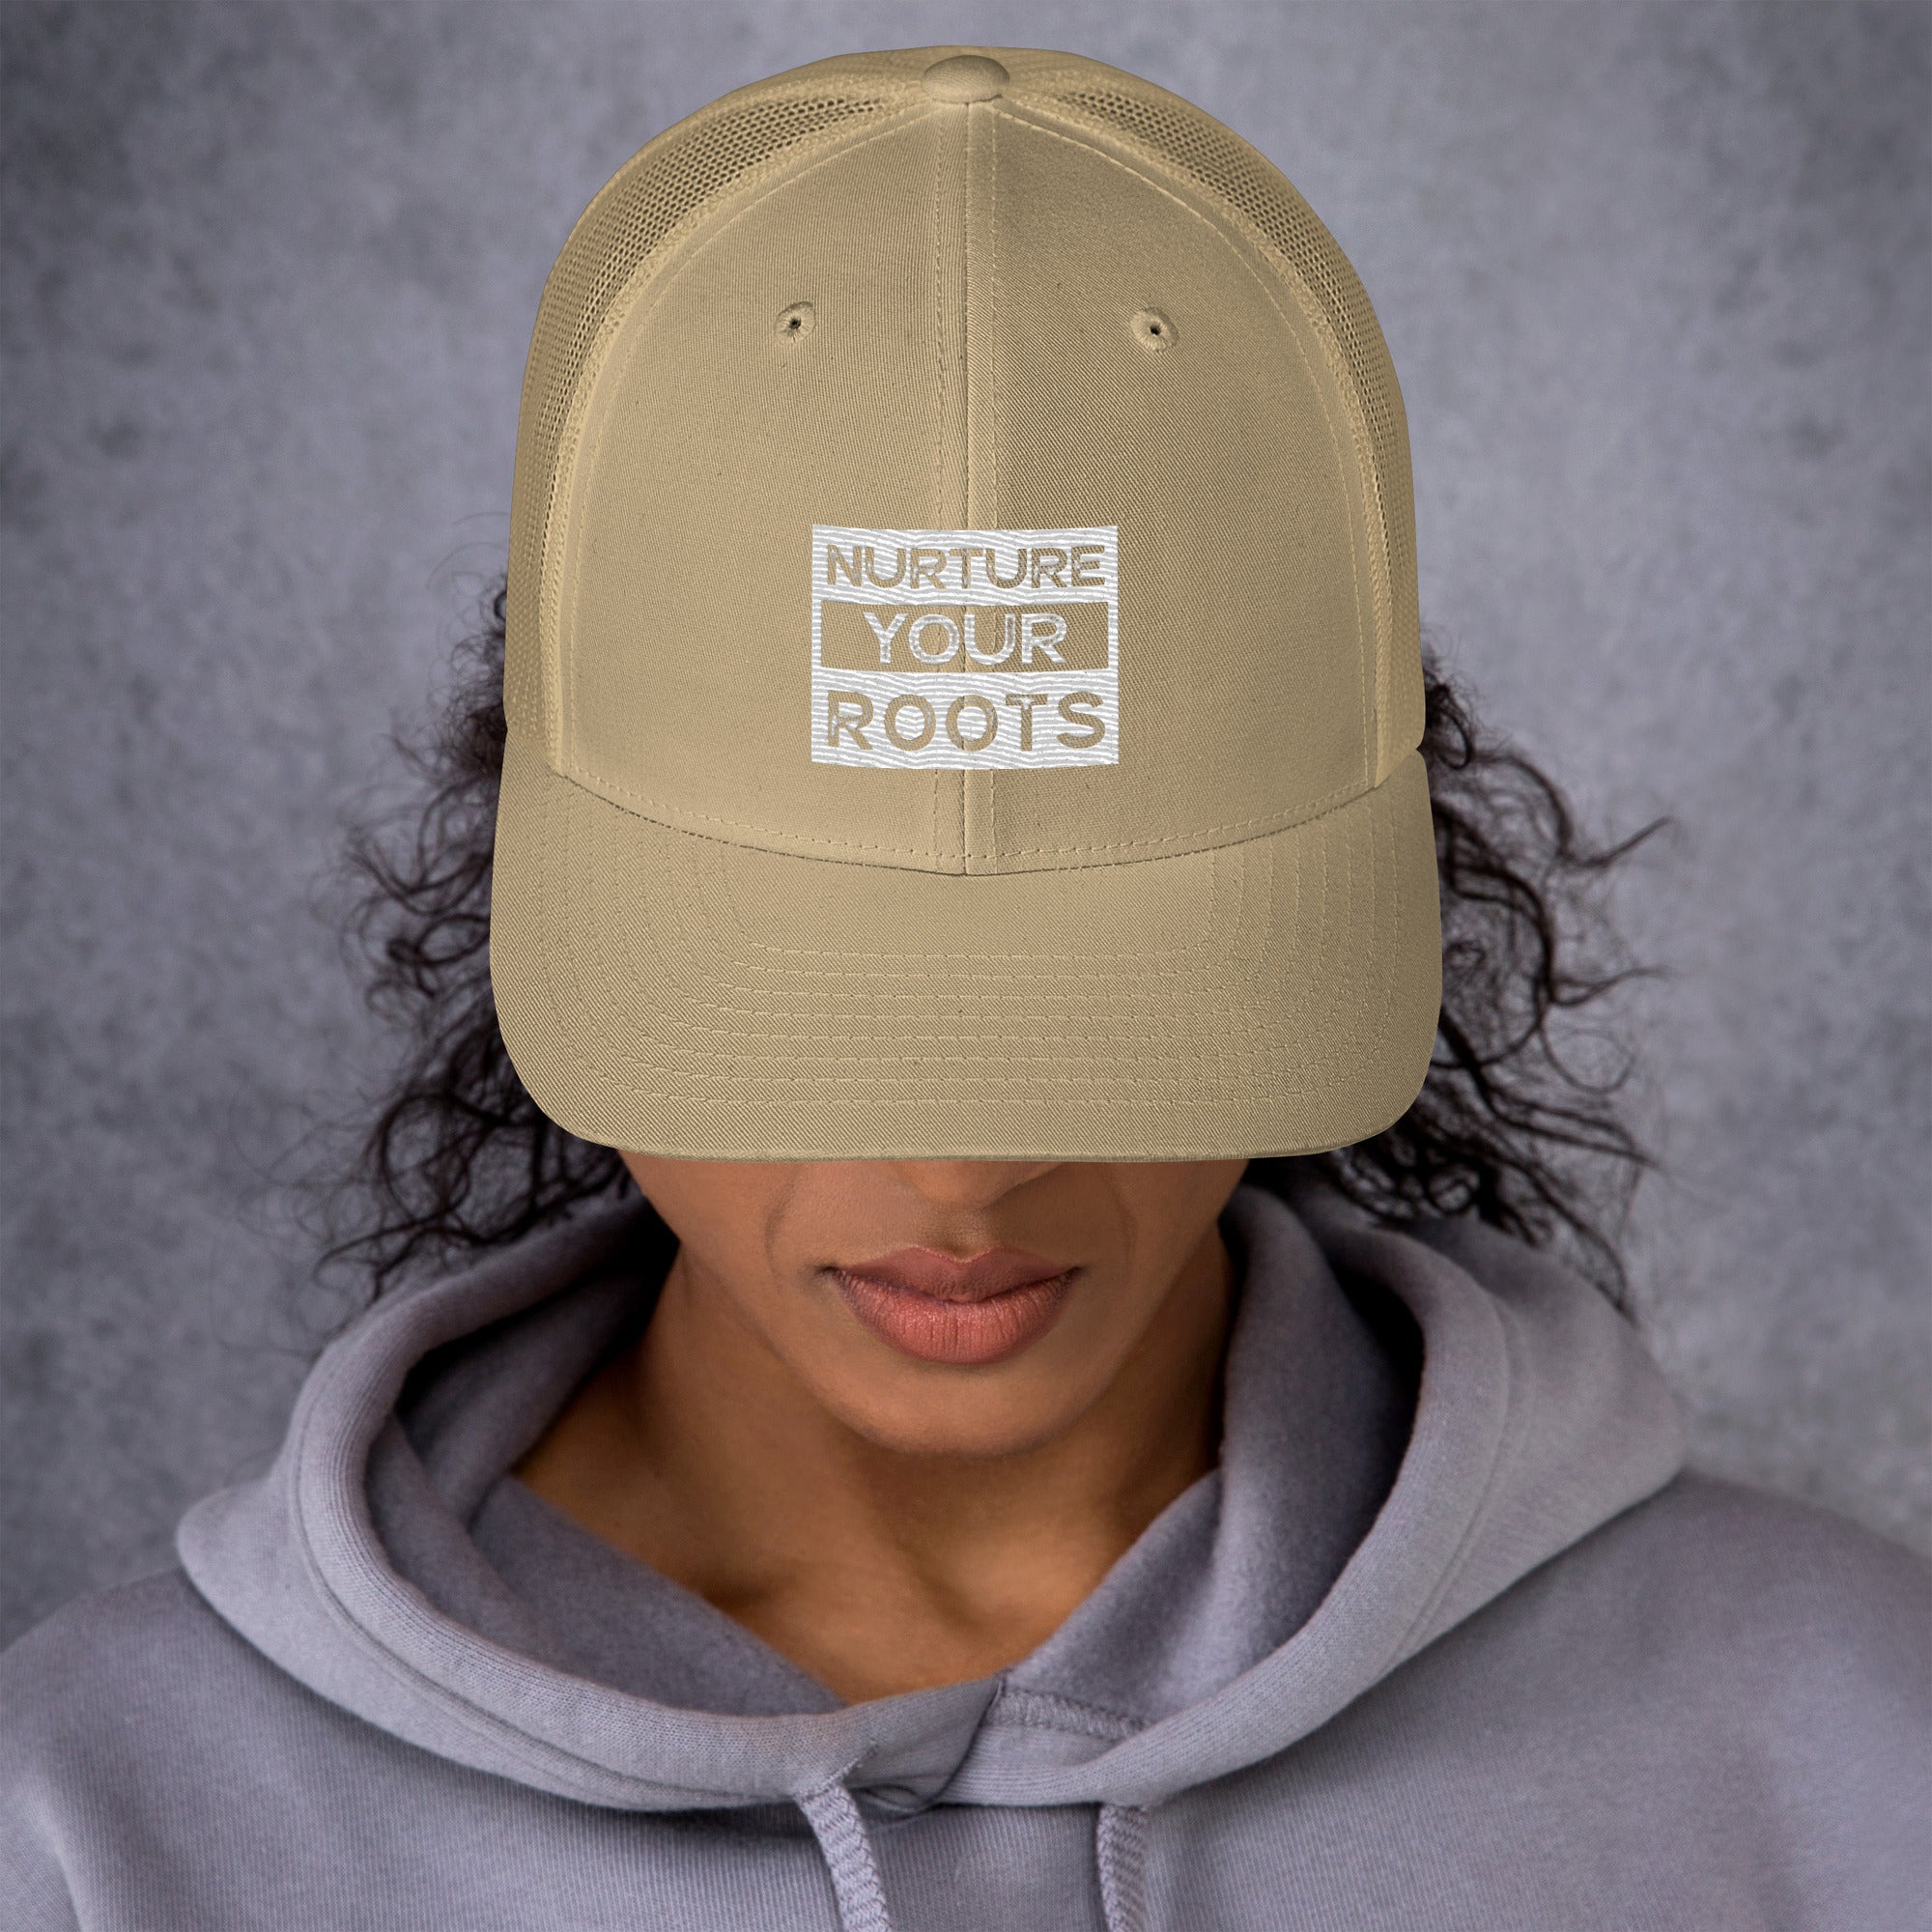 Nurture Your Roots Trucker Cap